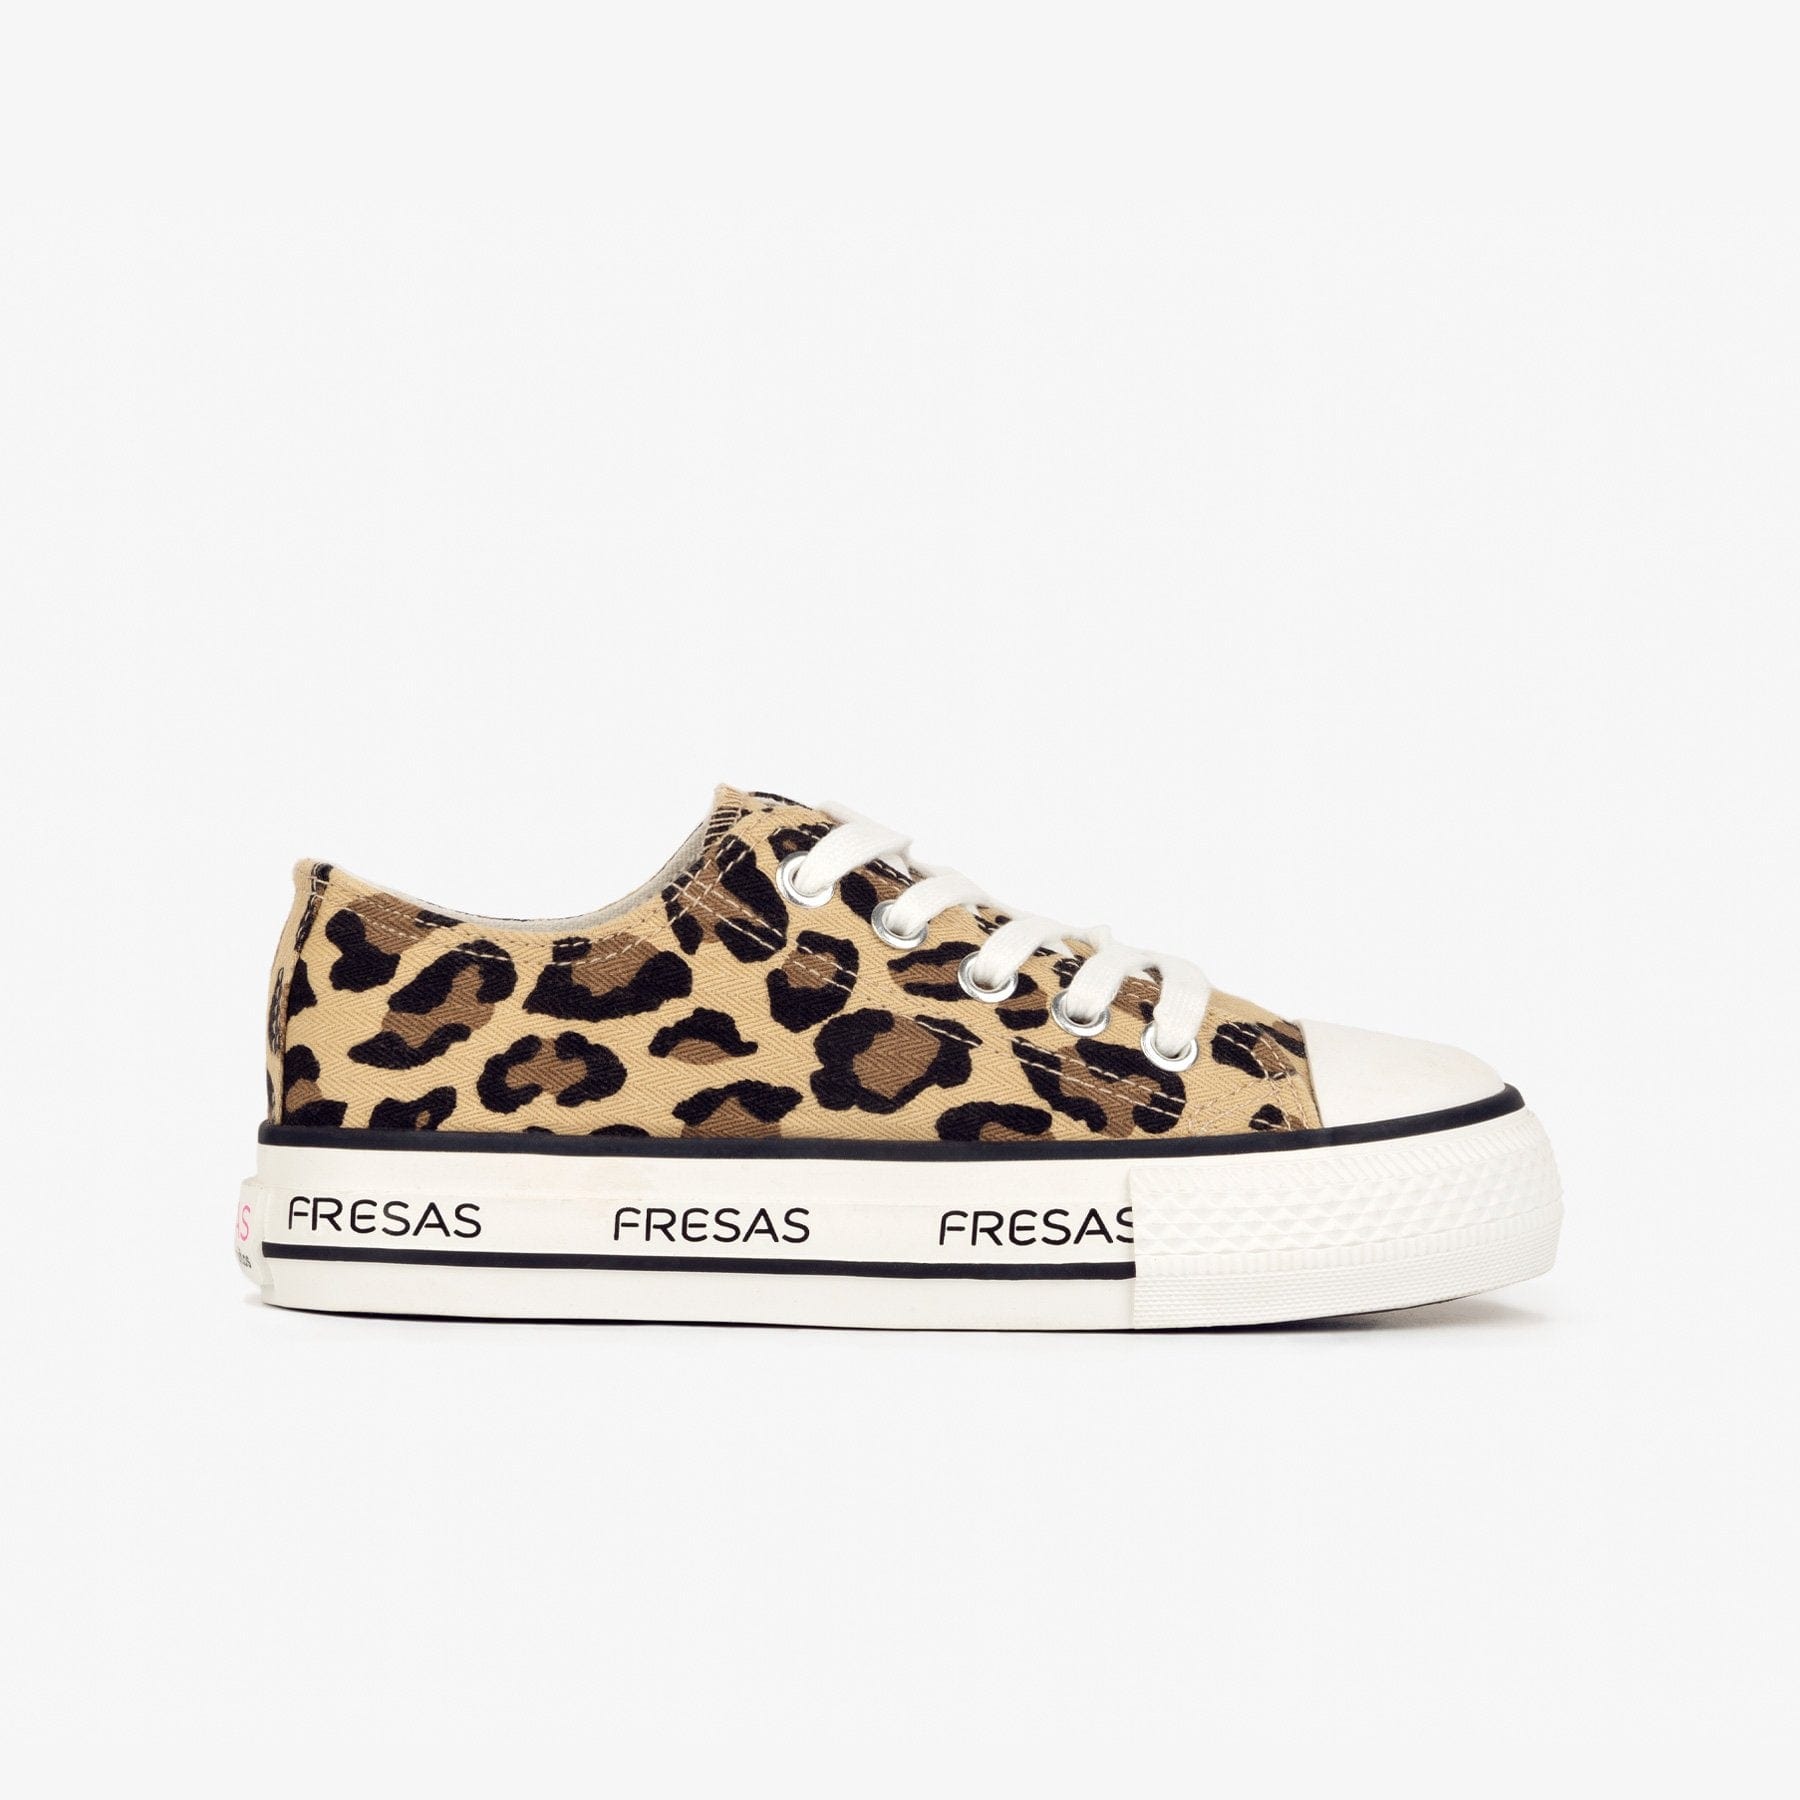 FRESAS CON NATA Shoes Unisex Leopard Canvas Sneakers